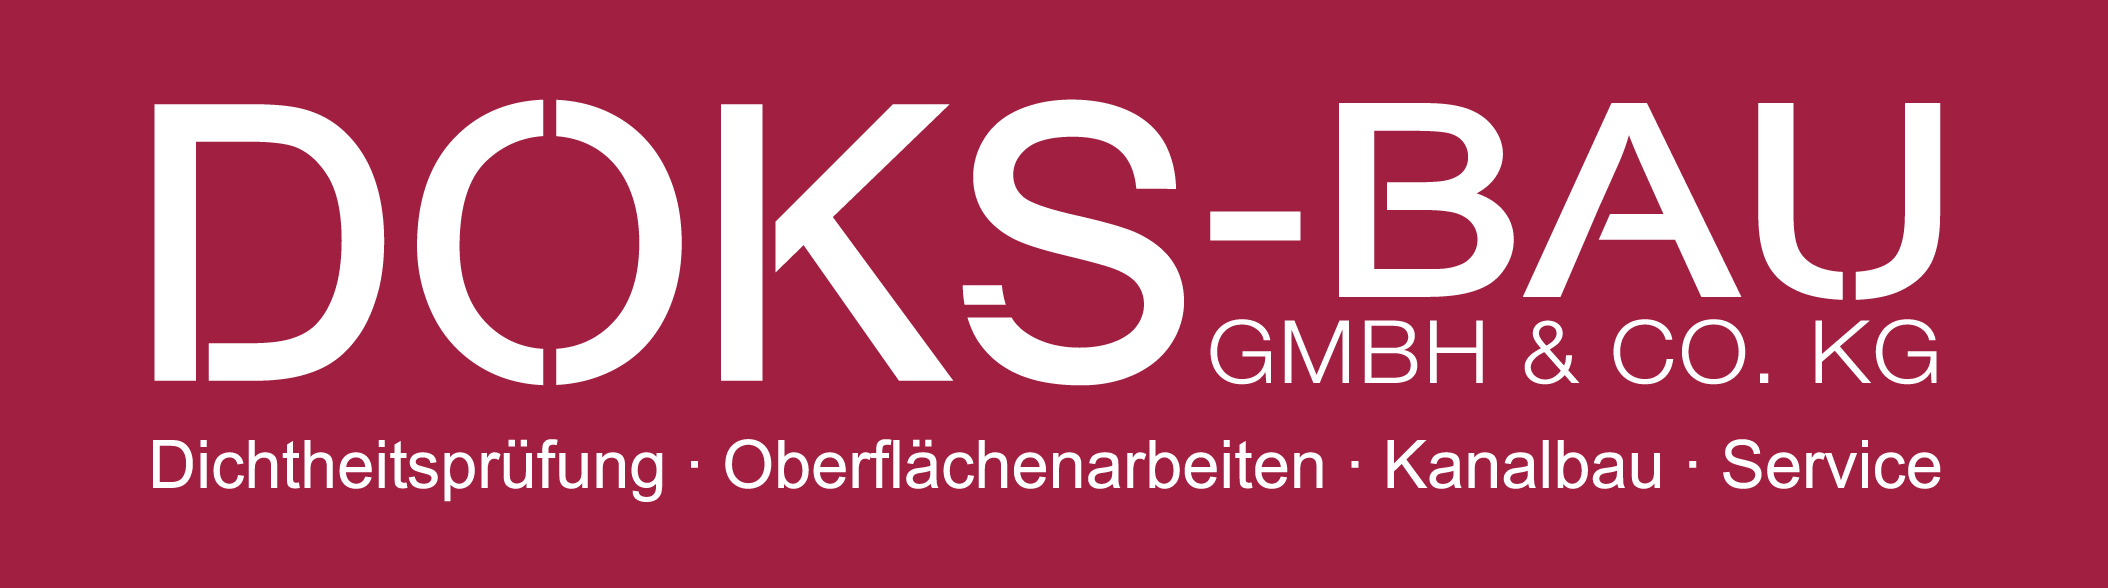 DOKS-BAU GmbH & Co. KG